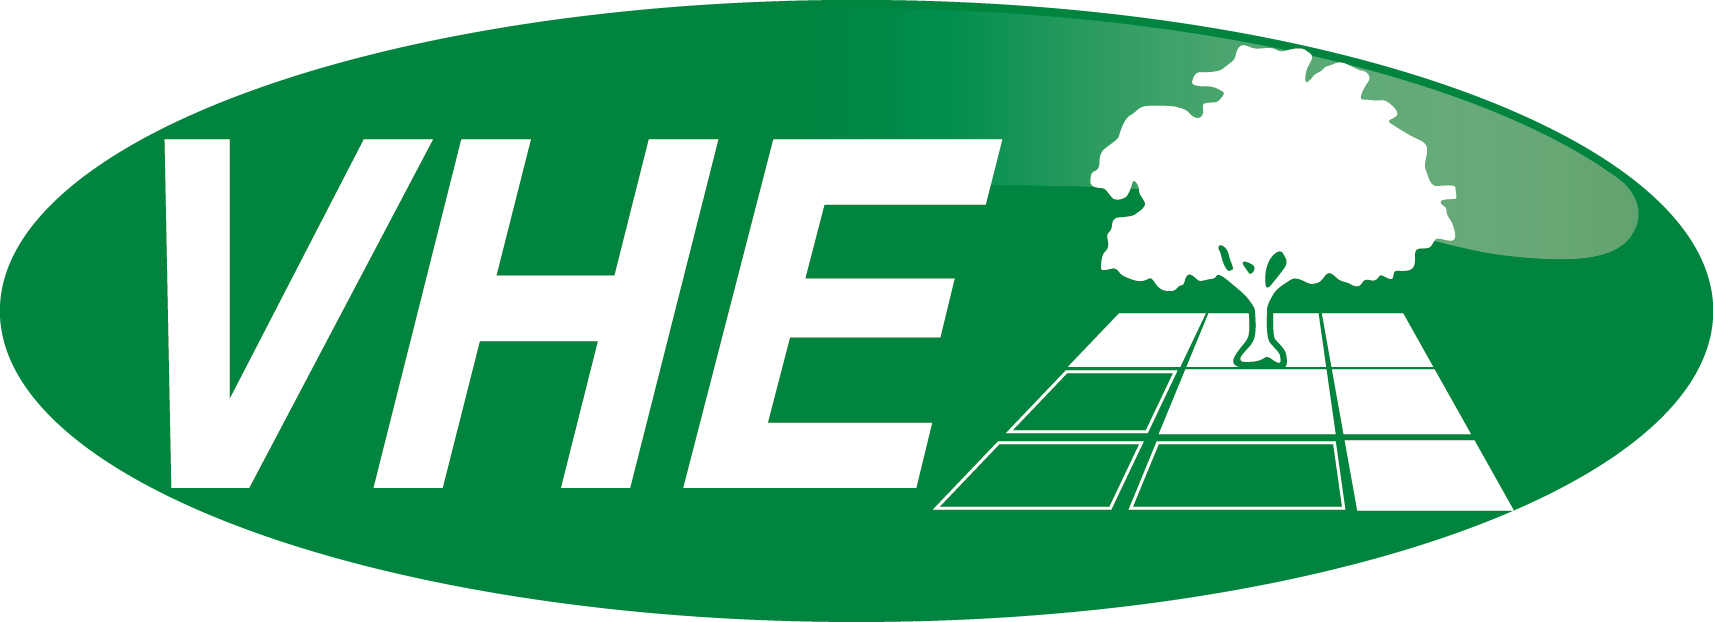 VHE Logo Large